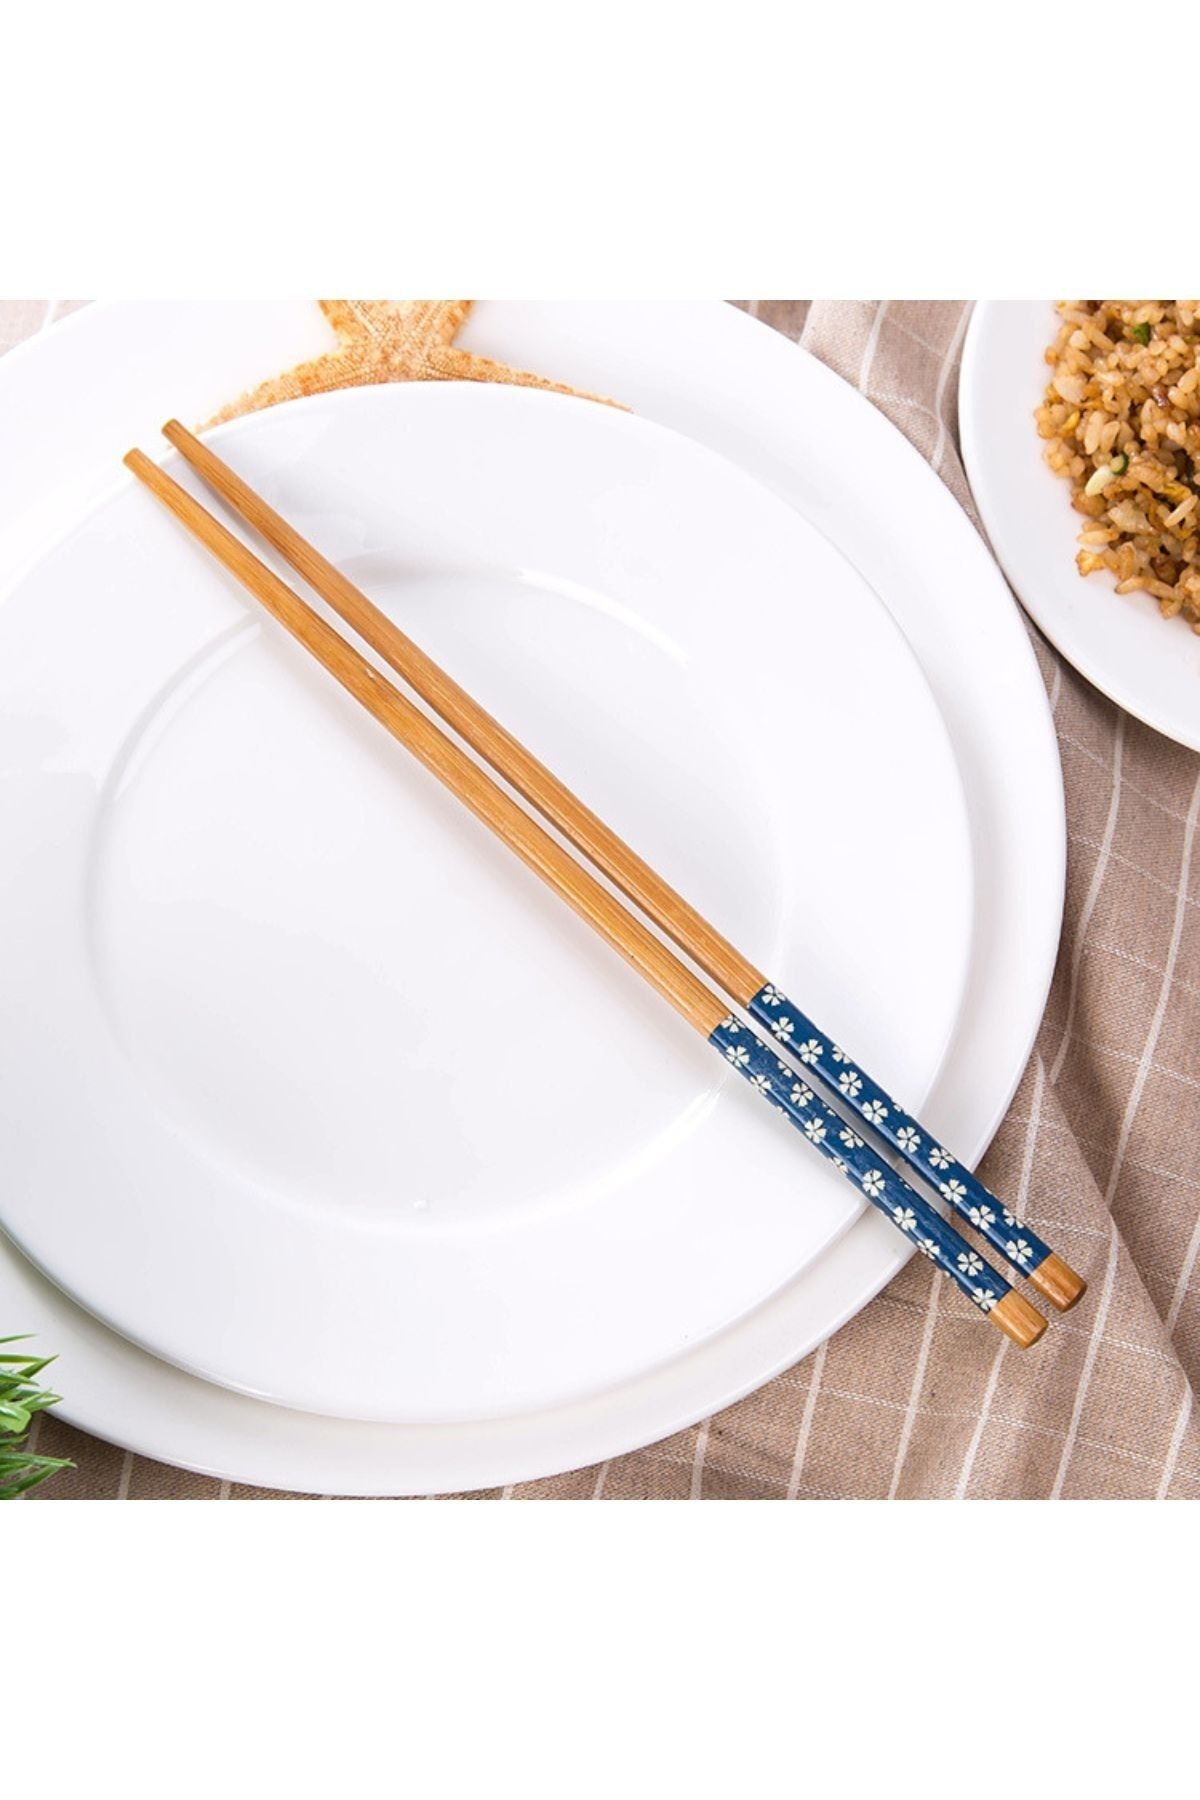 Kitchen Design Lab Lacivert/mavi Chopstick, Yıkanabilir Bambu Yemek Çubuğu, Sushi Japon Çin Yemek Çubuğu, 24 Cm